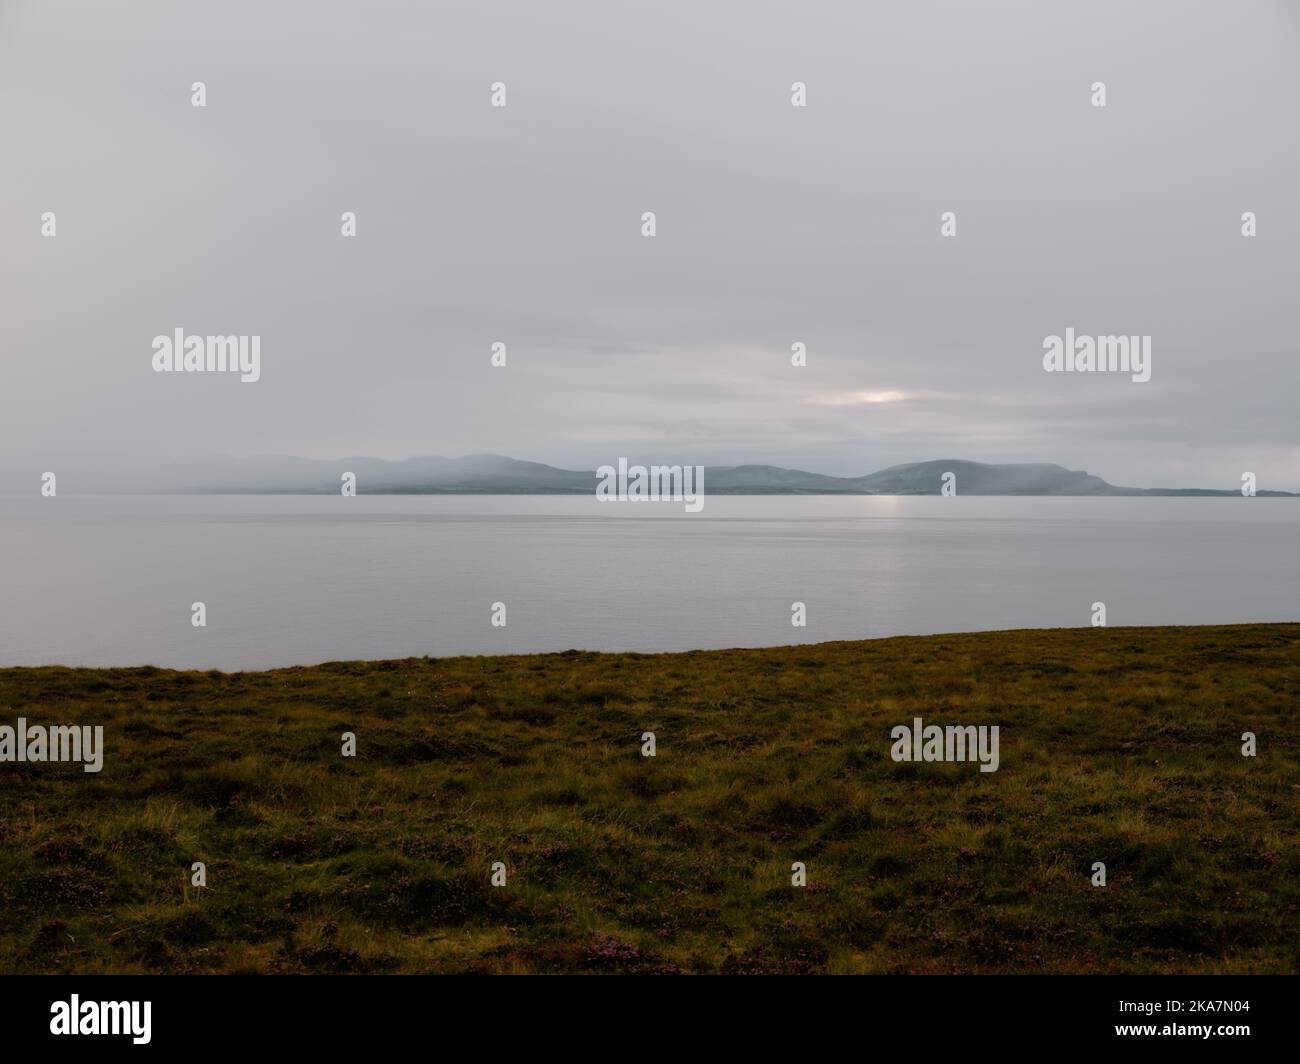 Une vue lointaine de l'île de Skye et le paysage de crépuscule du sud de l'Erradale près de Gairloch sur la côte ouest de l'Écosse Royaume-Uni Banque D'Images